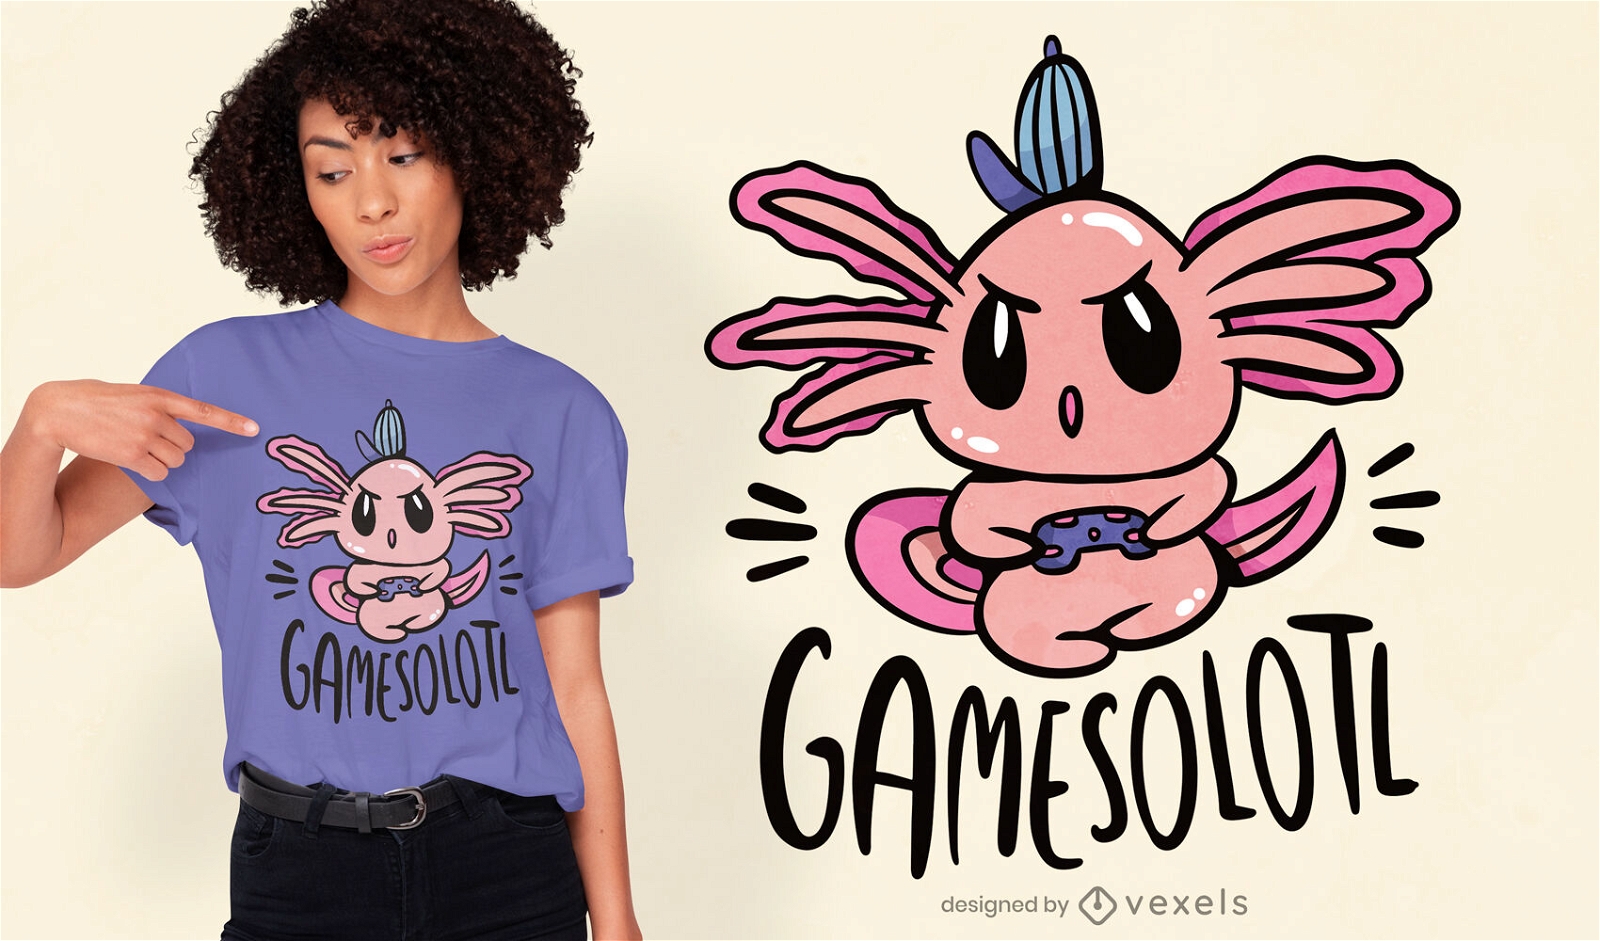 Gamer axolotl t-shirt design